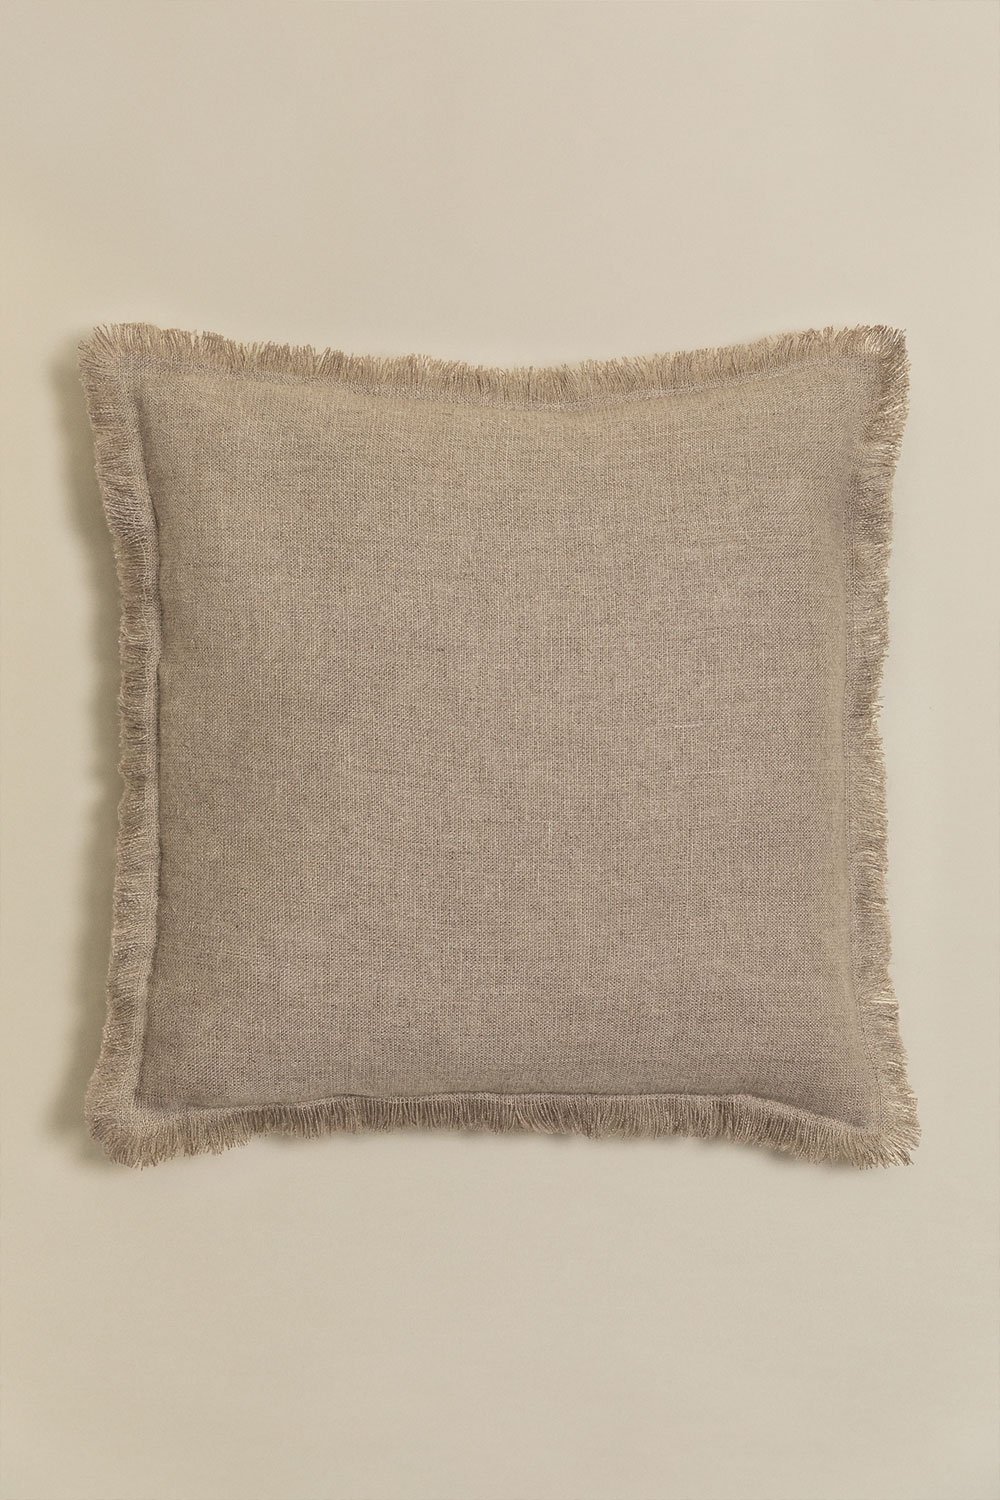 Kwadratowa poduszka z bawełny i lnu (45x45 cm) Glenfern, obrazek w galerii 1